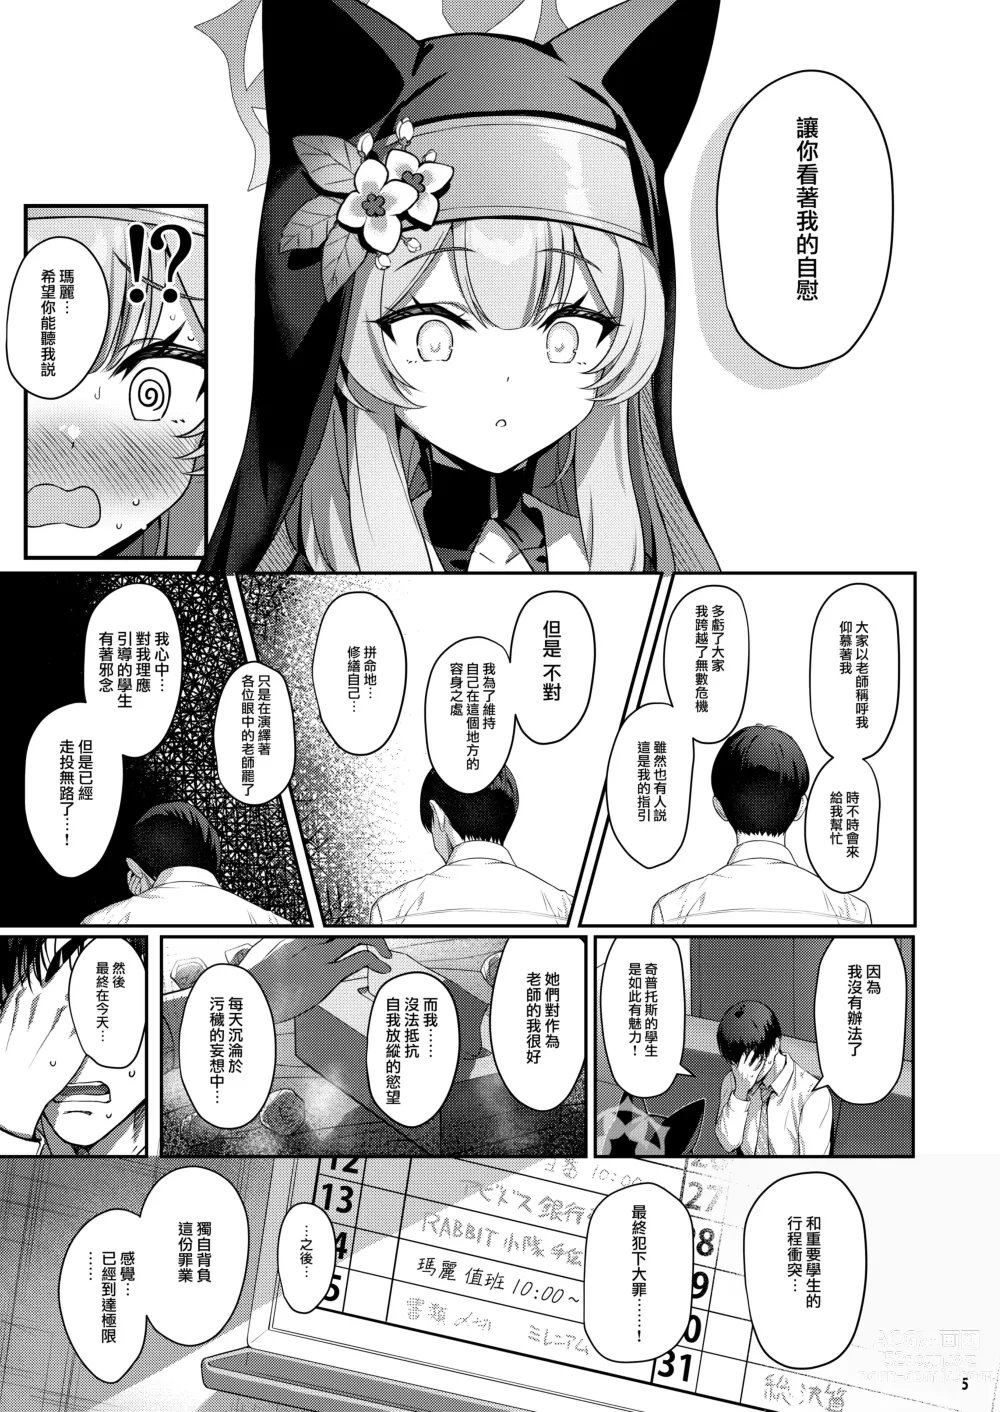 Page 5 of doujinshi Idaraku